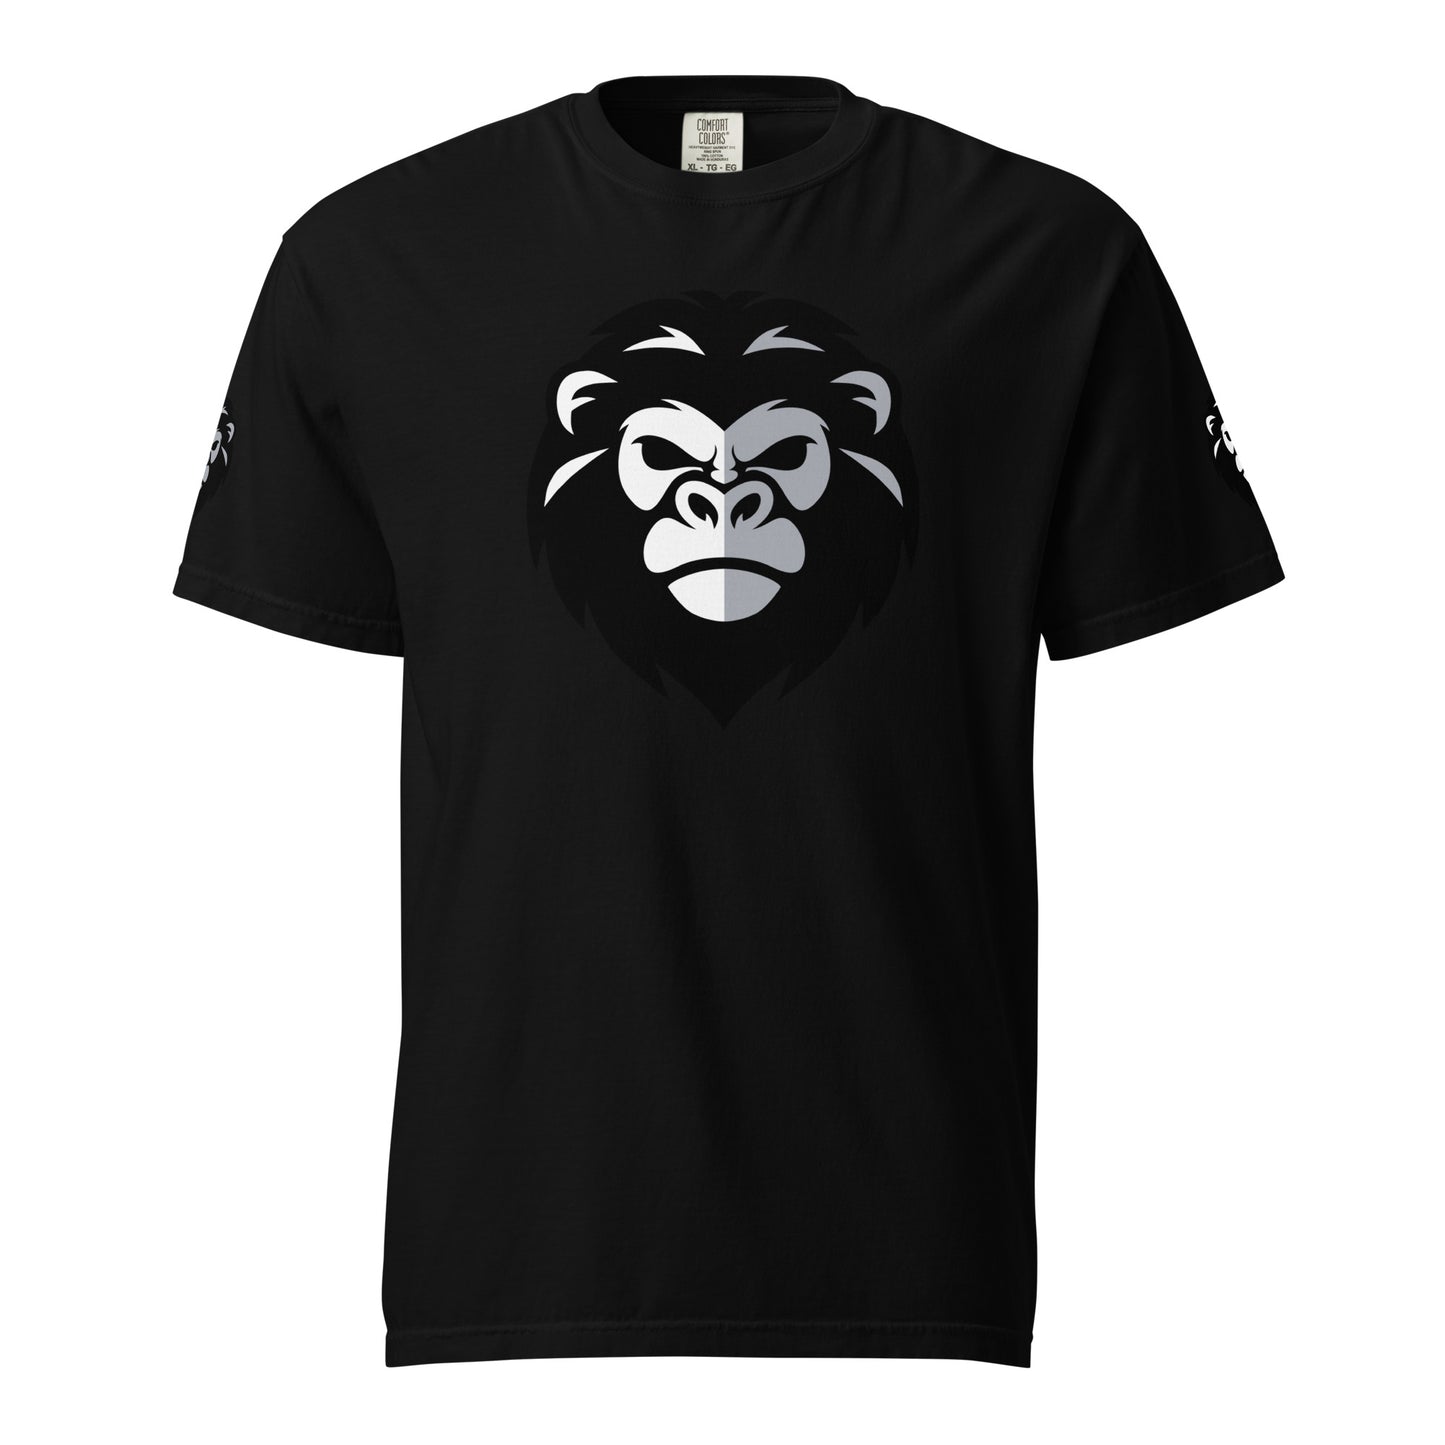 Unisex Become a Beast T-Shirt